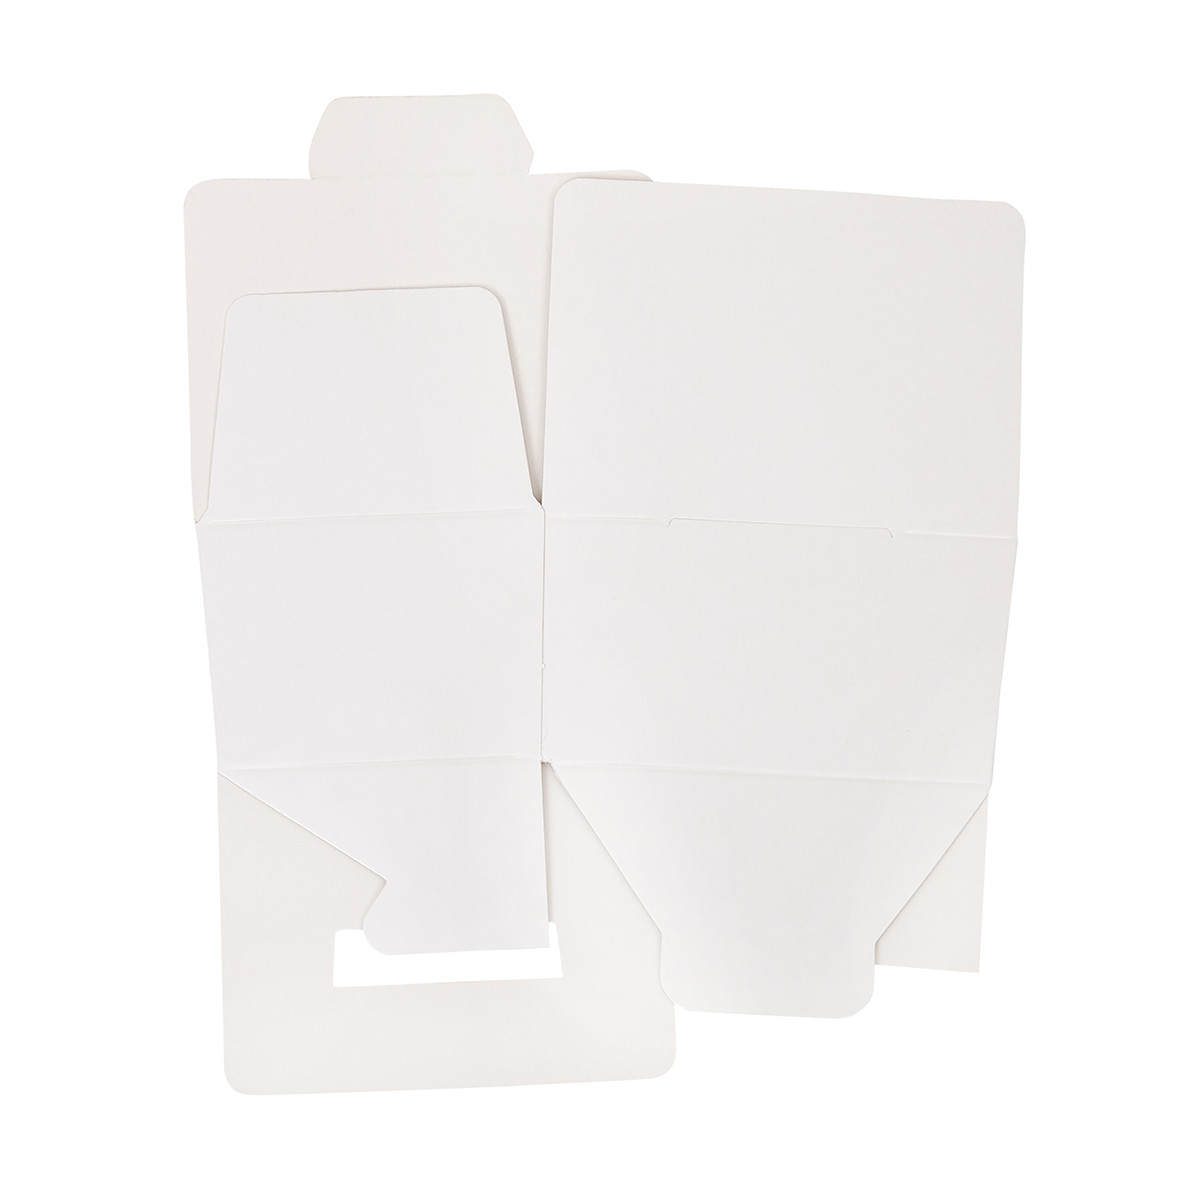 Bonbon box White Glossy -125 grams- 3 pieces